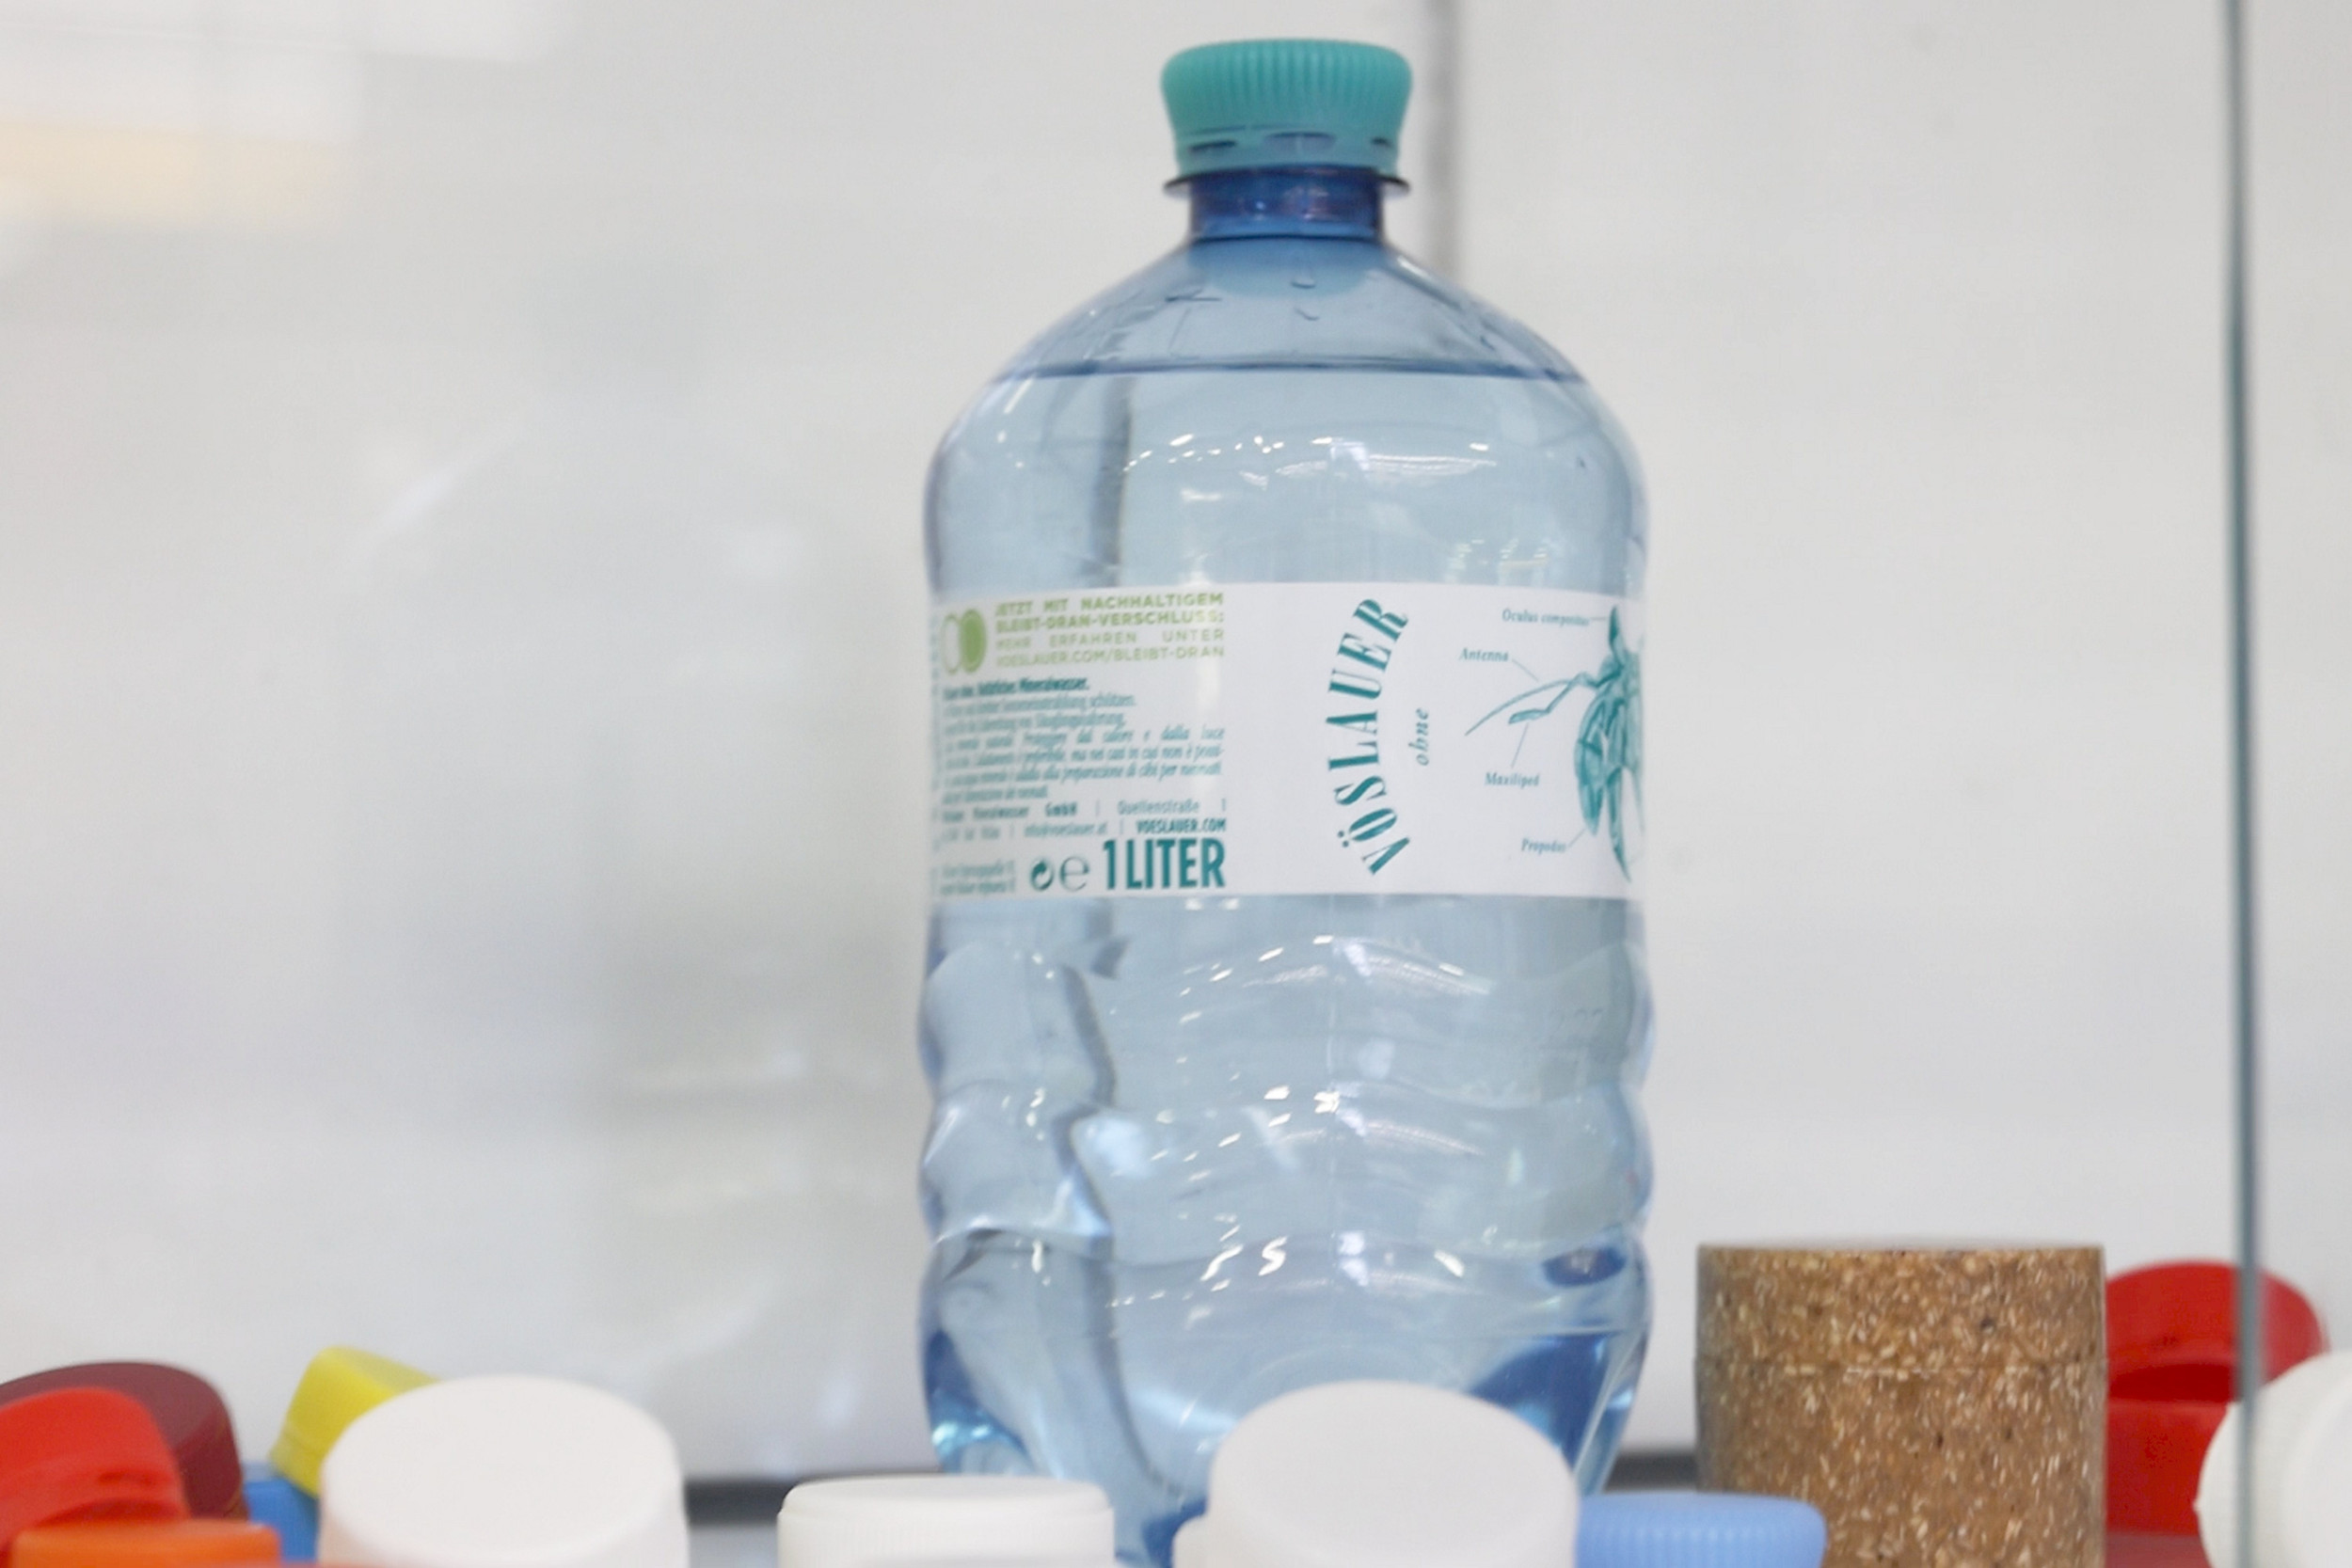 Alpla ist eines der führenden Unternehmen im Bereich Entwicklung und Produktion innovativer Verpackungslösungen aus Kunststoff. Zum Portfolio gehören Verpackungssysteme, Flaschen, Verschlüsse und Spritzgussteile für verschiedenste Wirtschaftszweige.